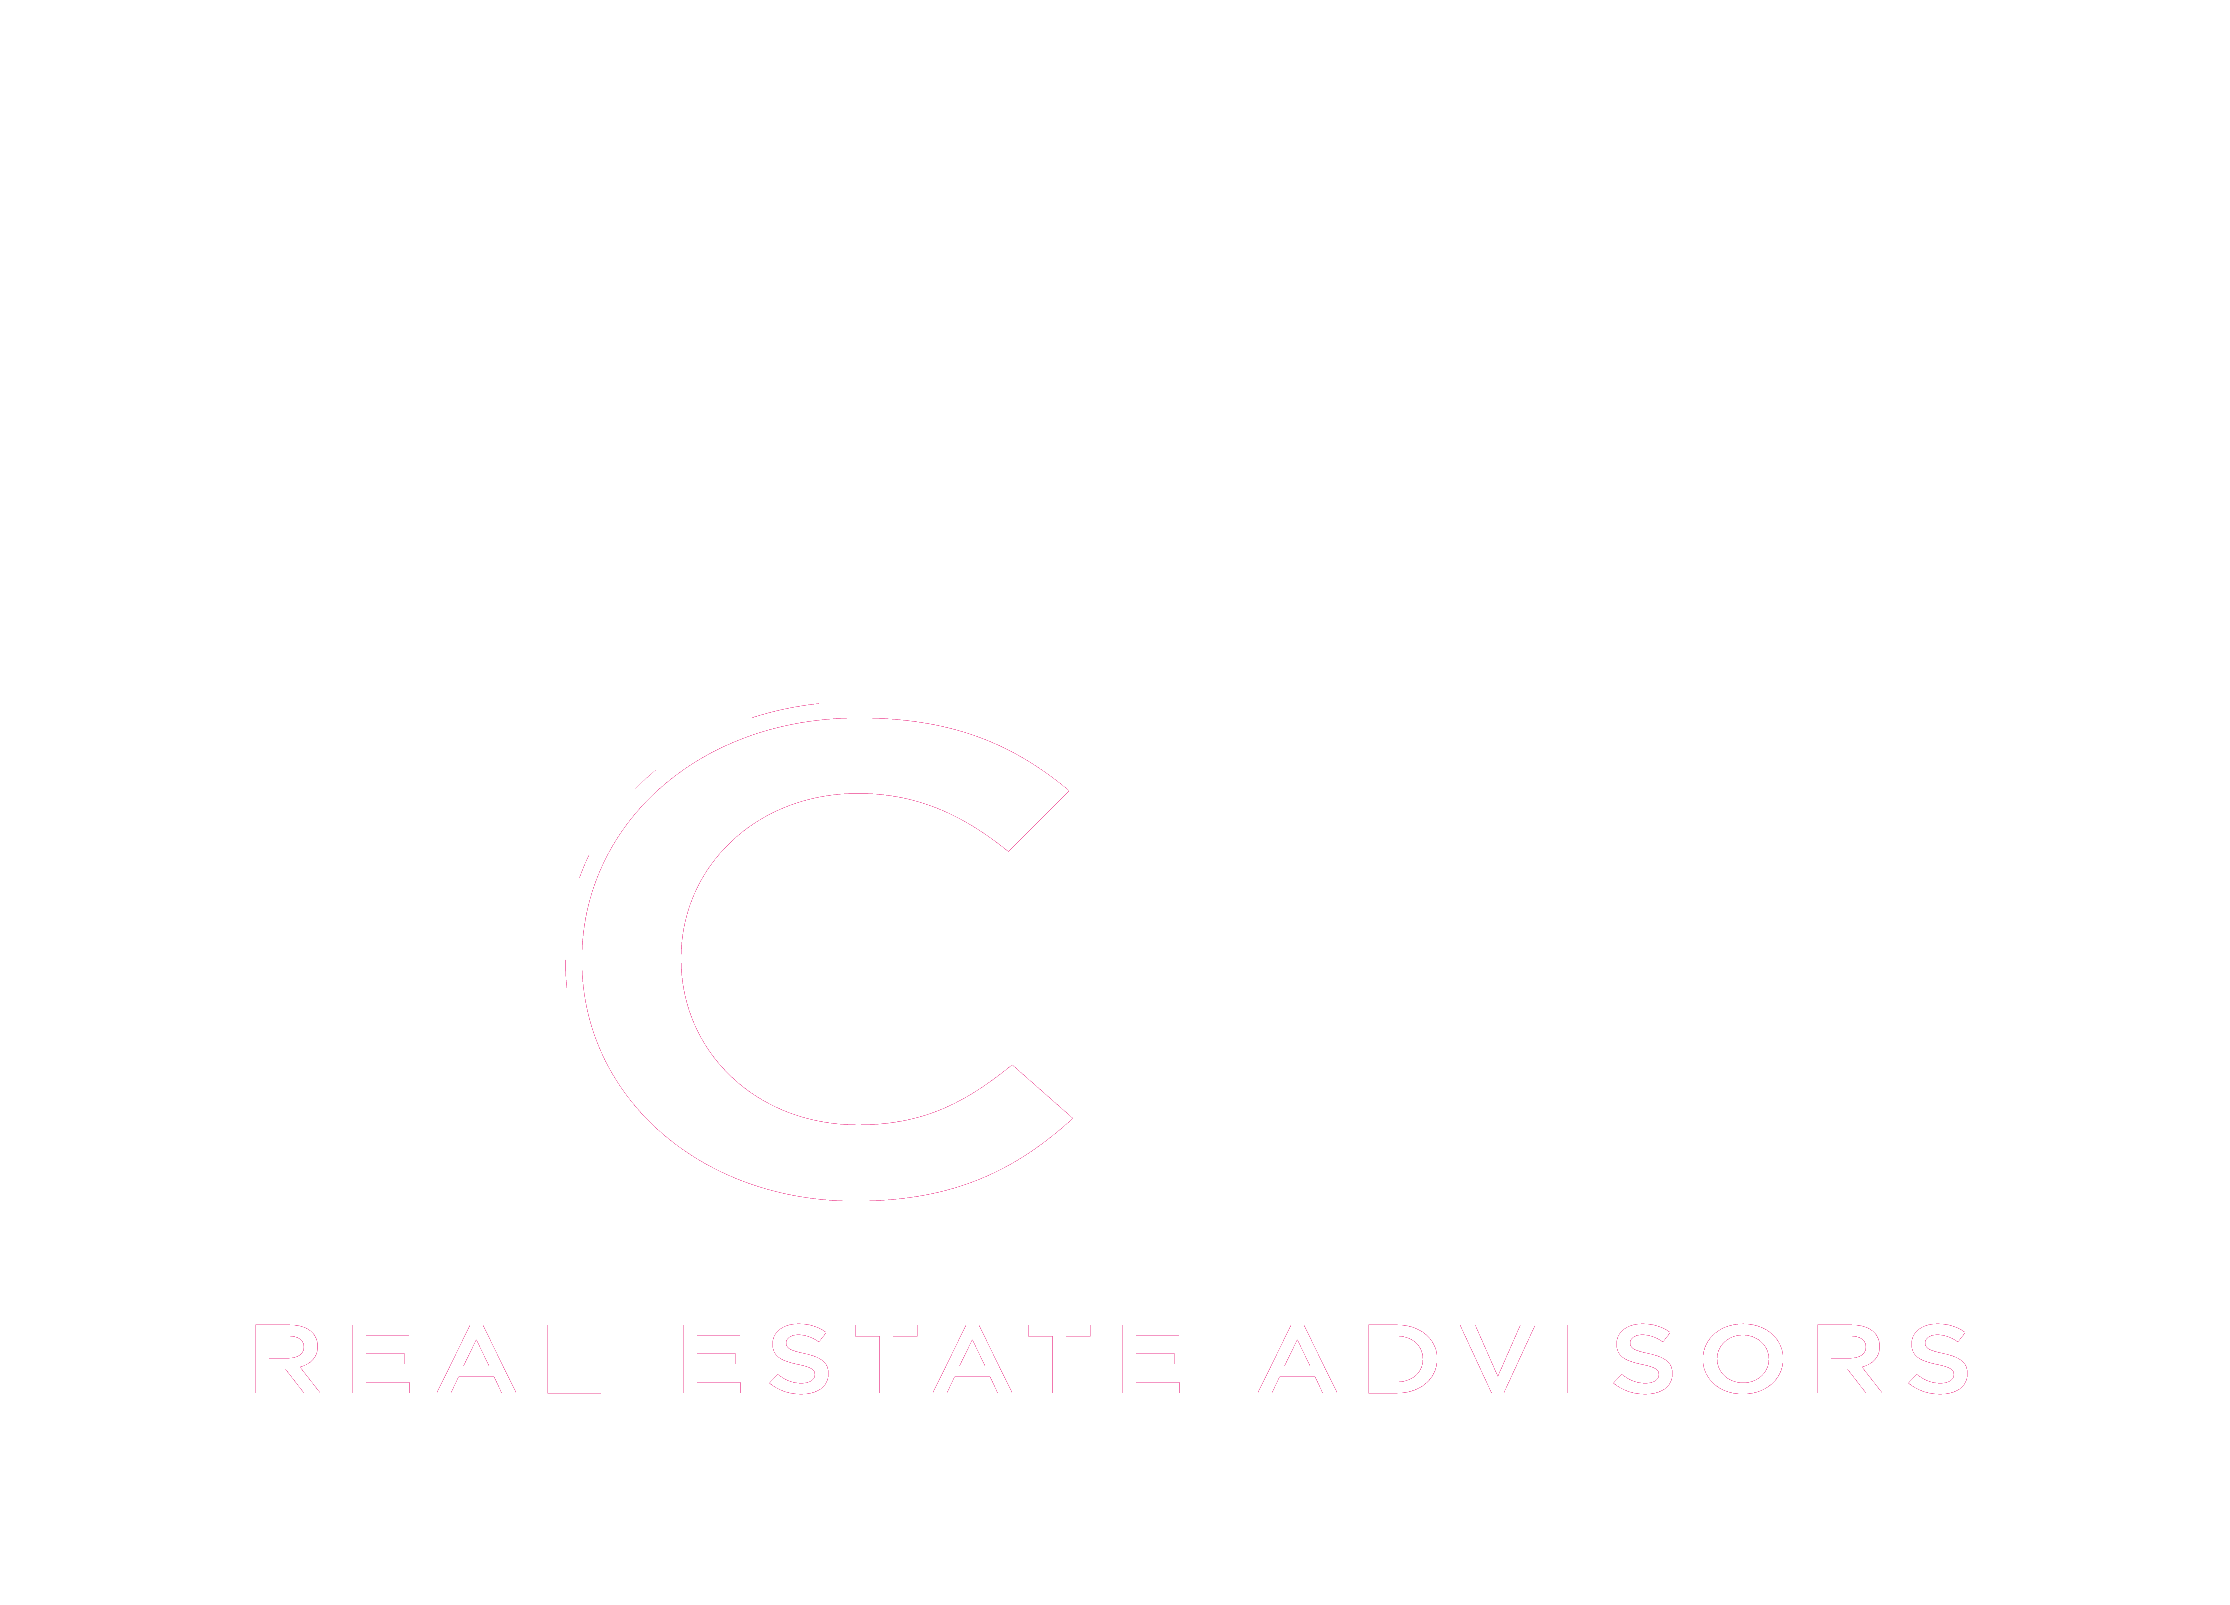 CRV Real Estate Advisors Logo (White)